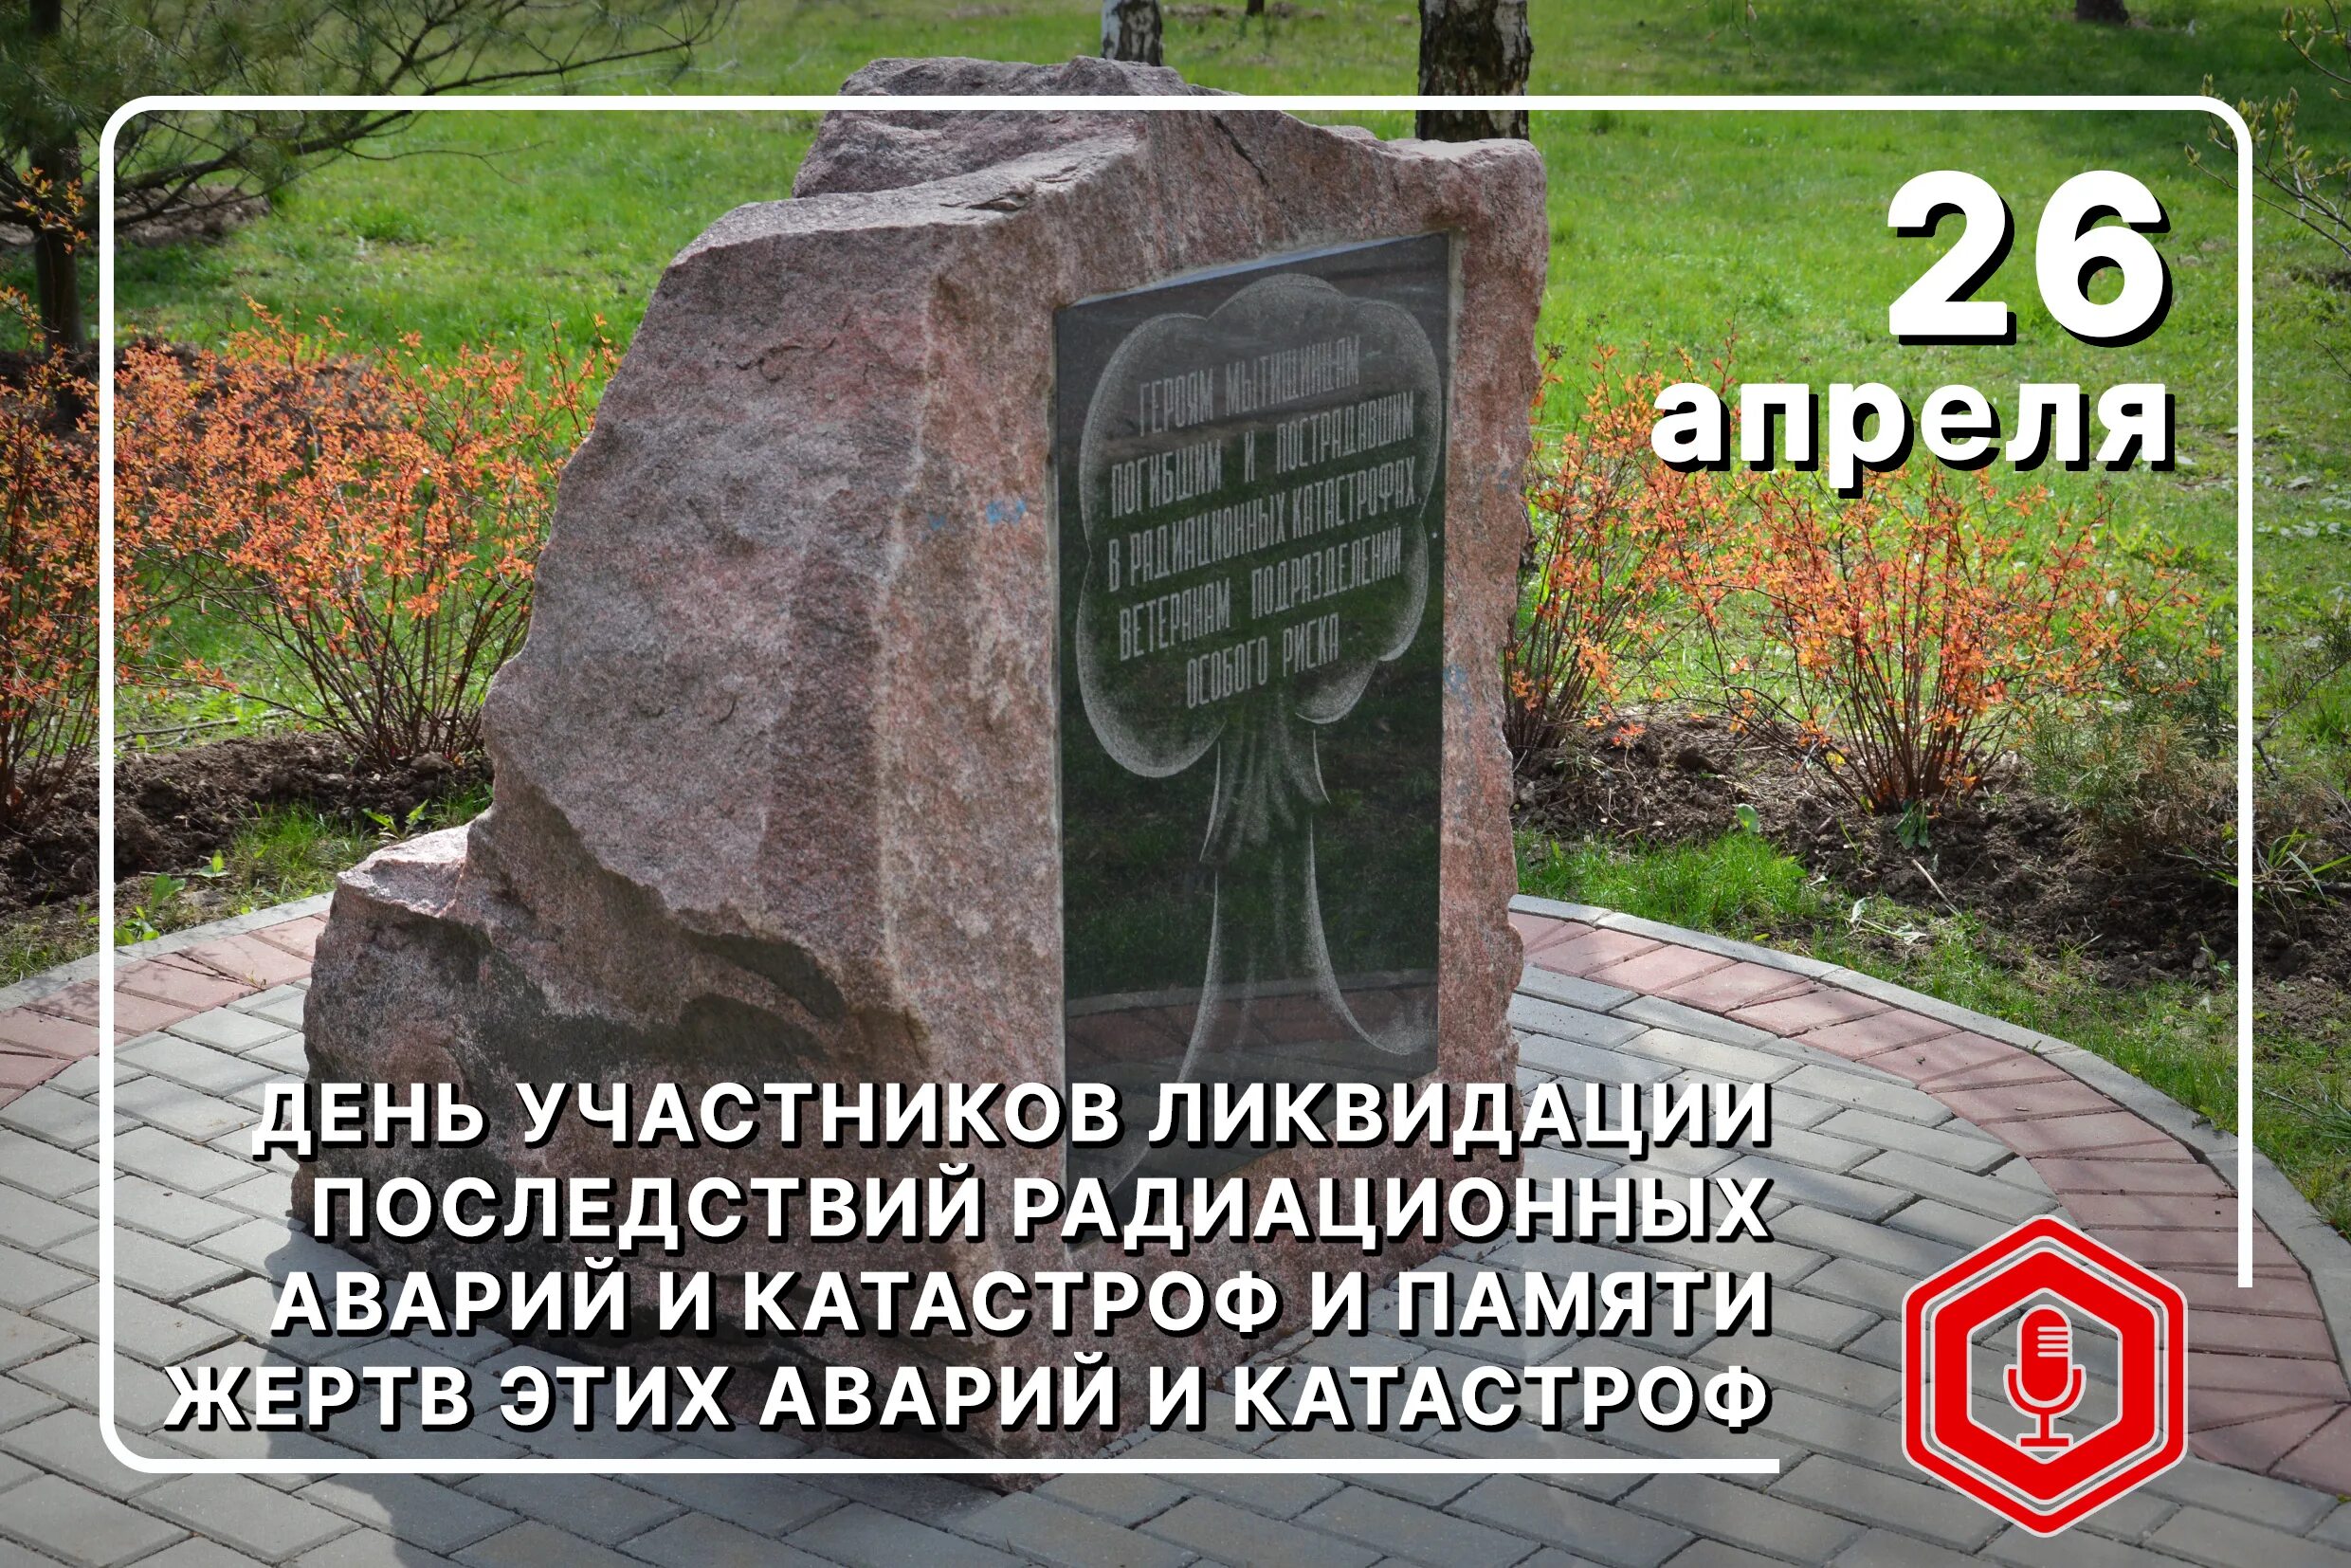 26 апреля день ликвидации последствий. День памяти погибших в радиоактивных авариях и катастрофах. 26 Апреля день памяти погибших в радиационных авариях и катастрофах. Международный день памяти о Чернобыльской катастрофе. 26 Апреля Дата.